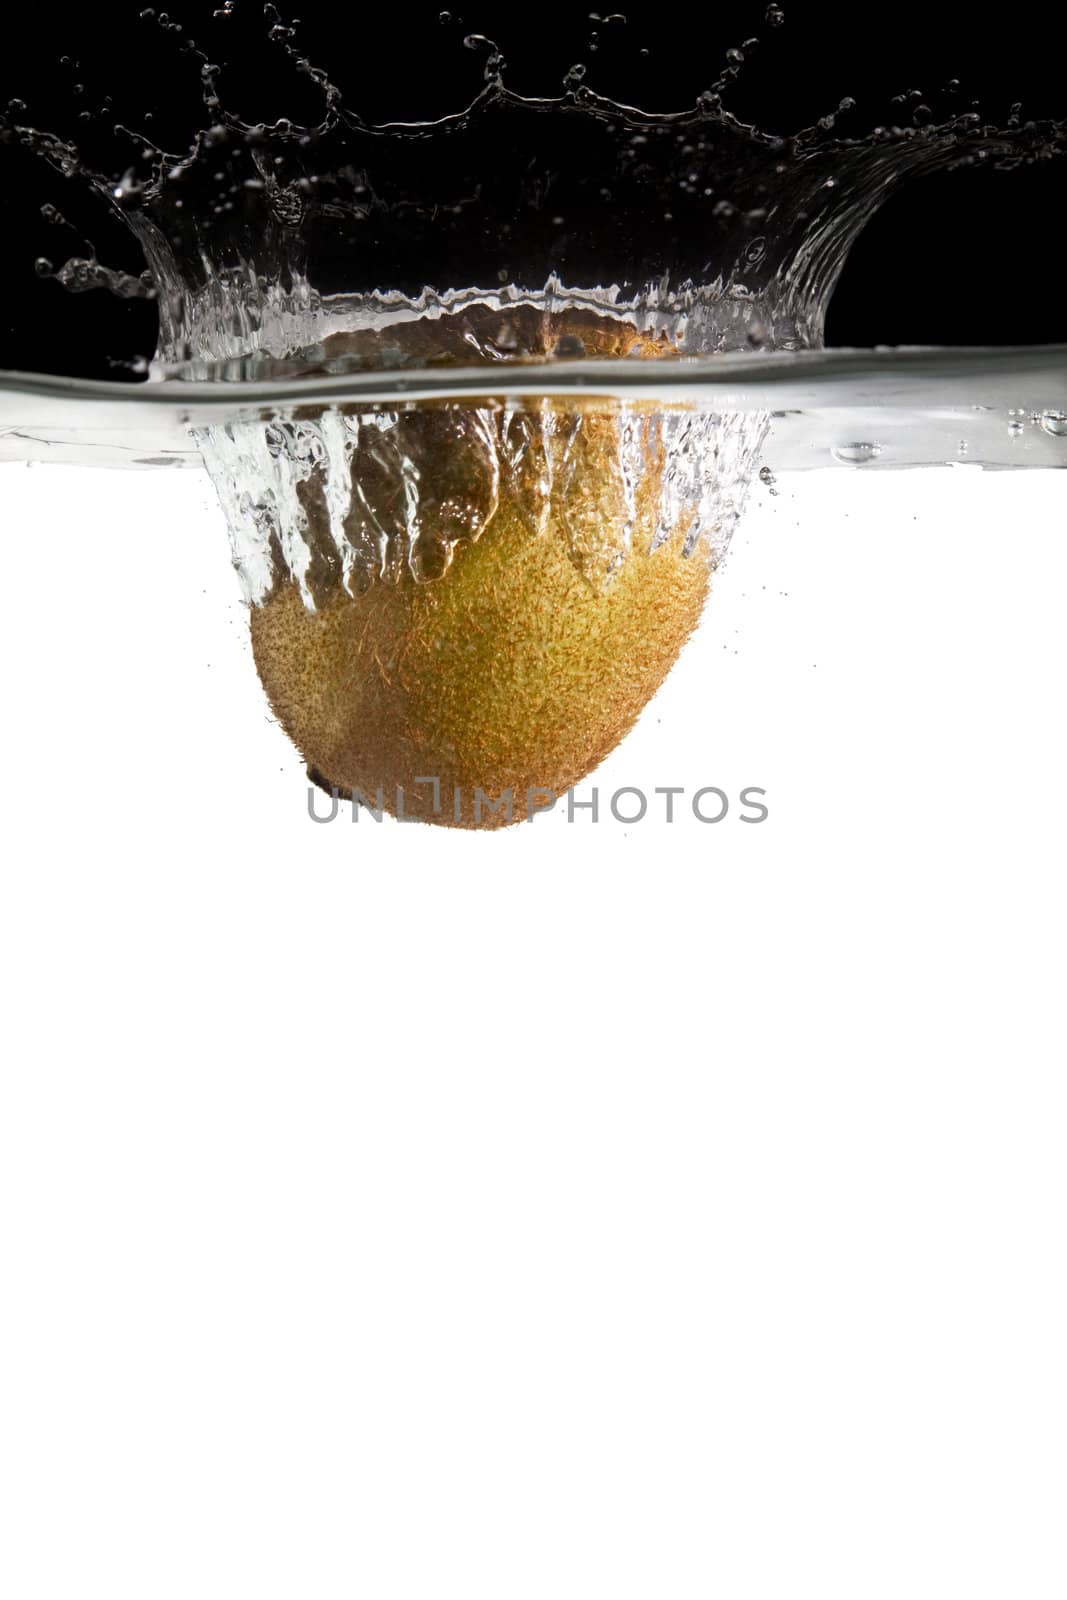 Kiwifruit thrown in water